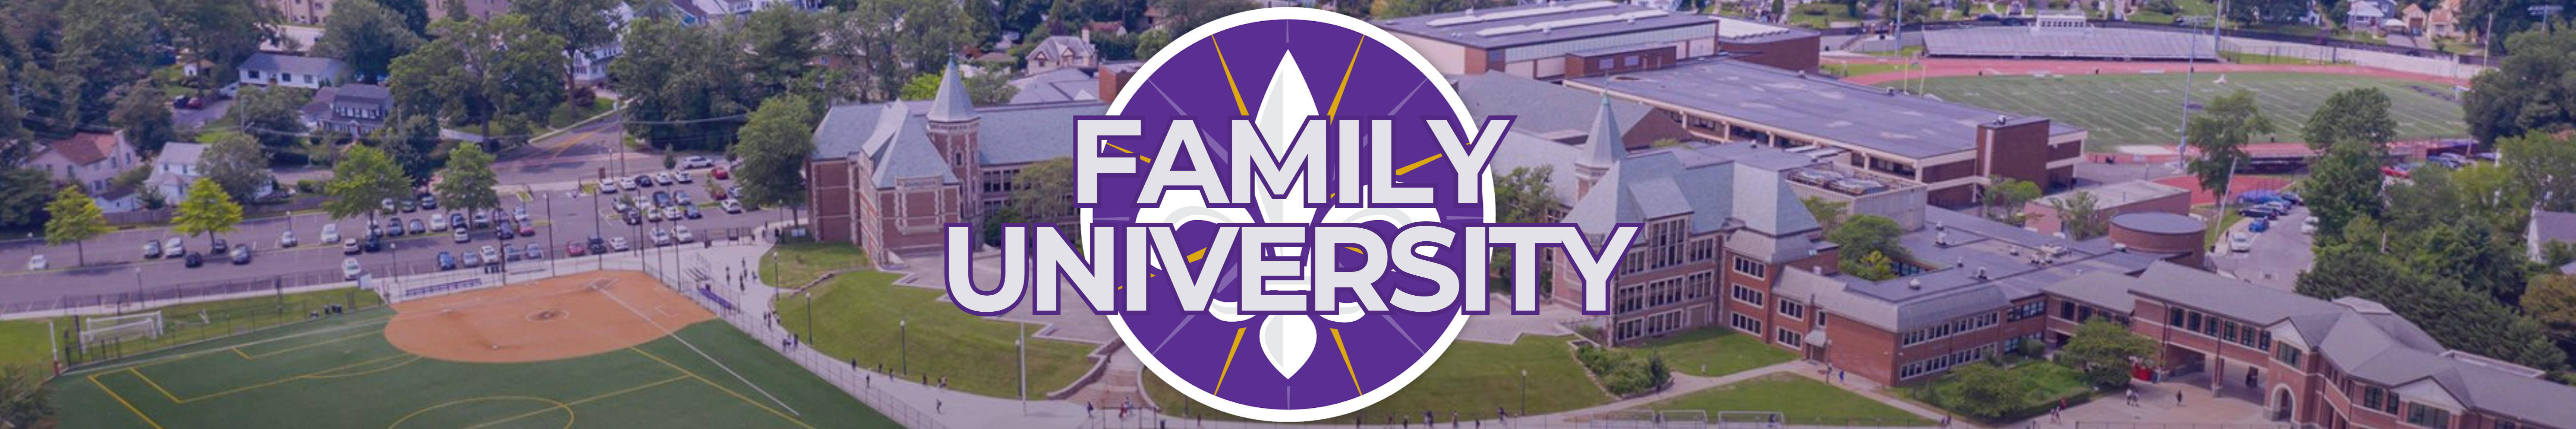 Family University banner